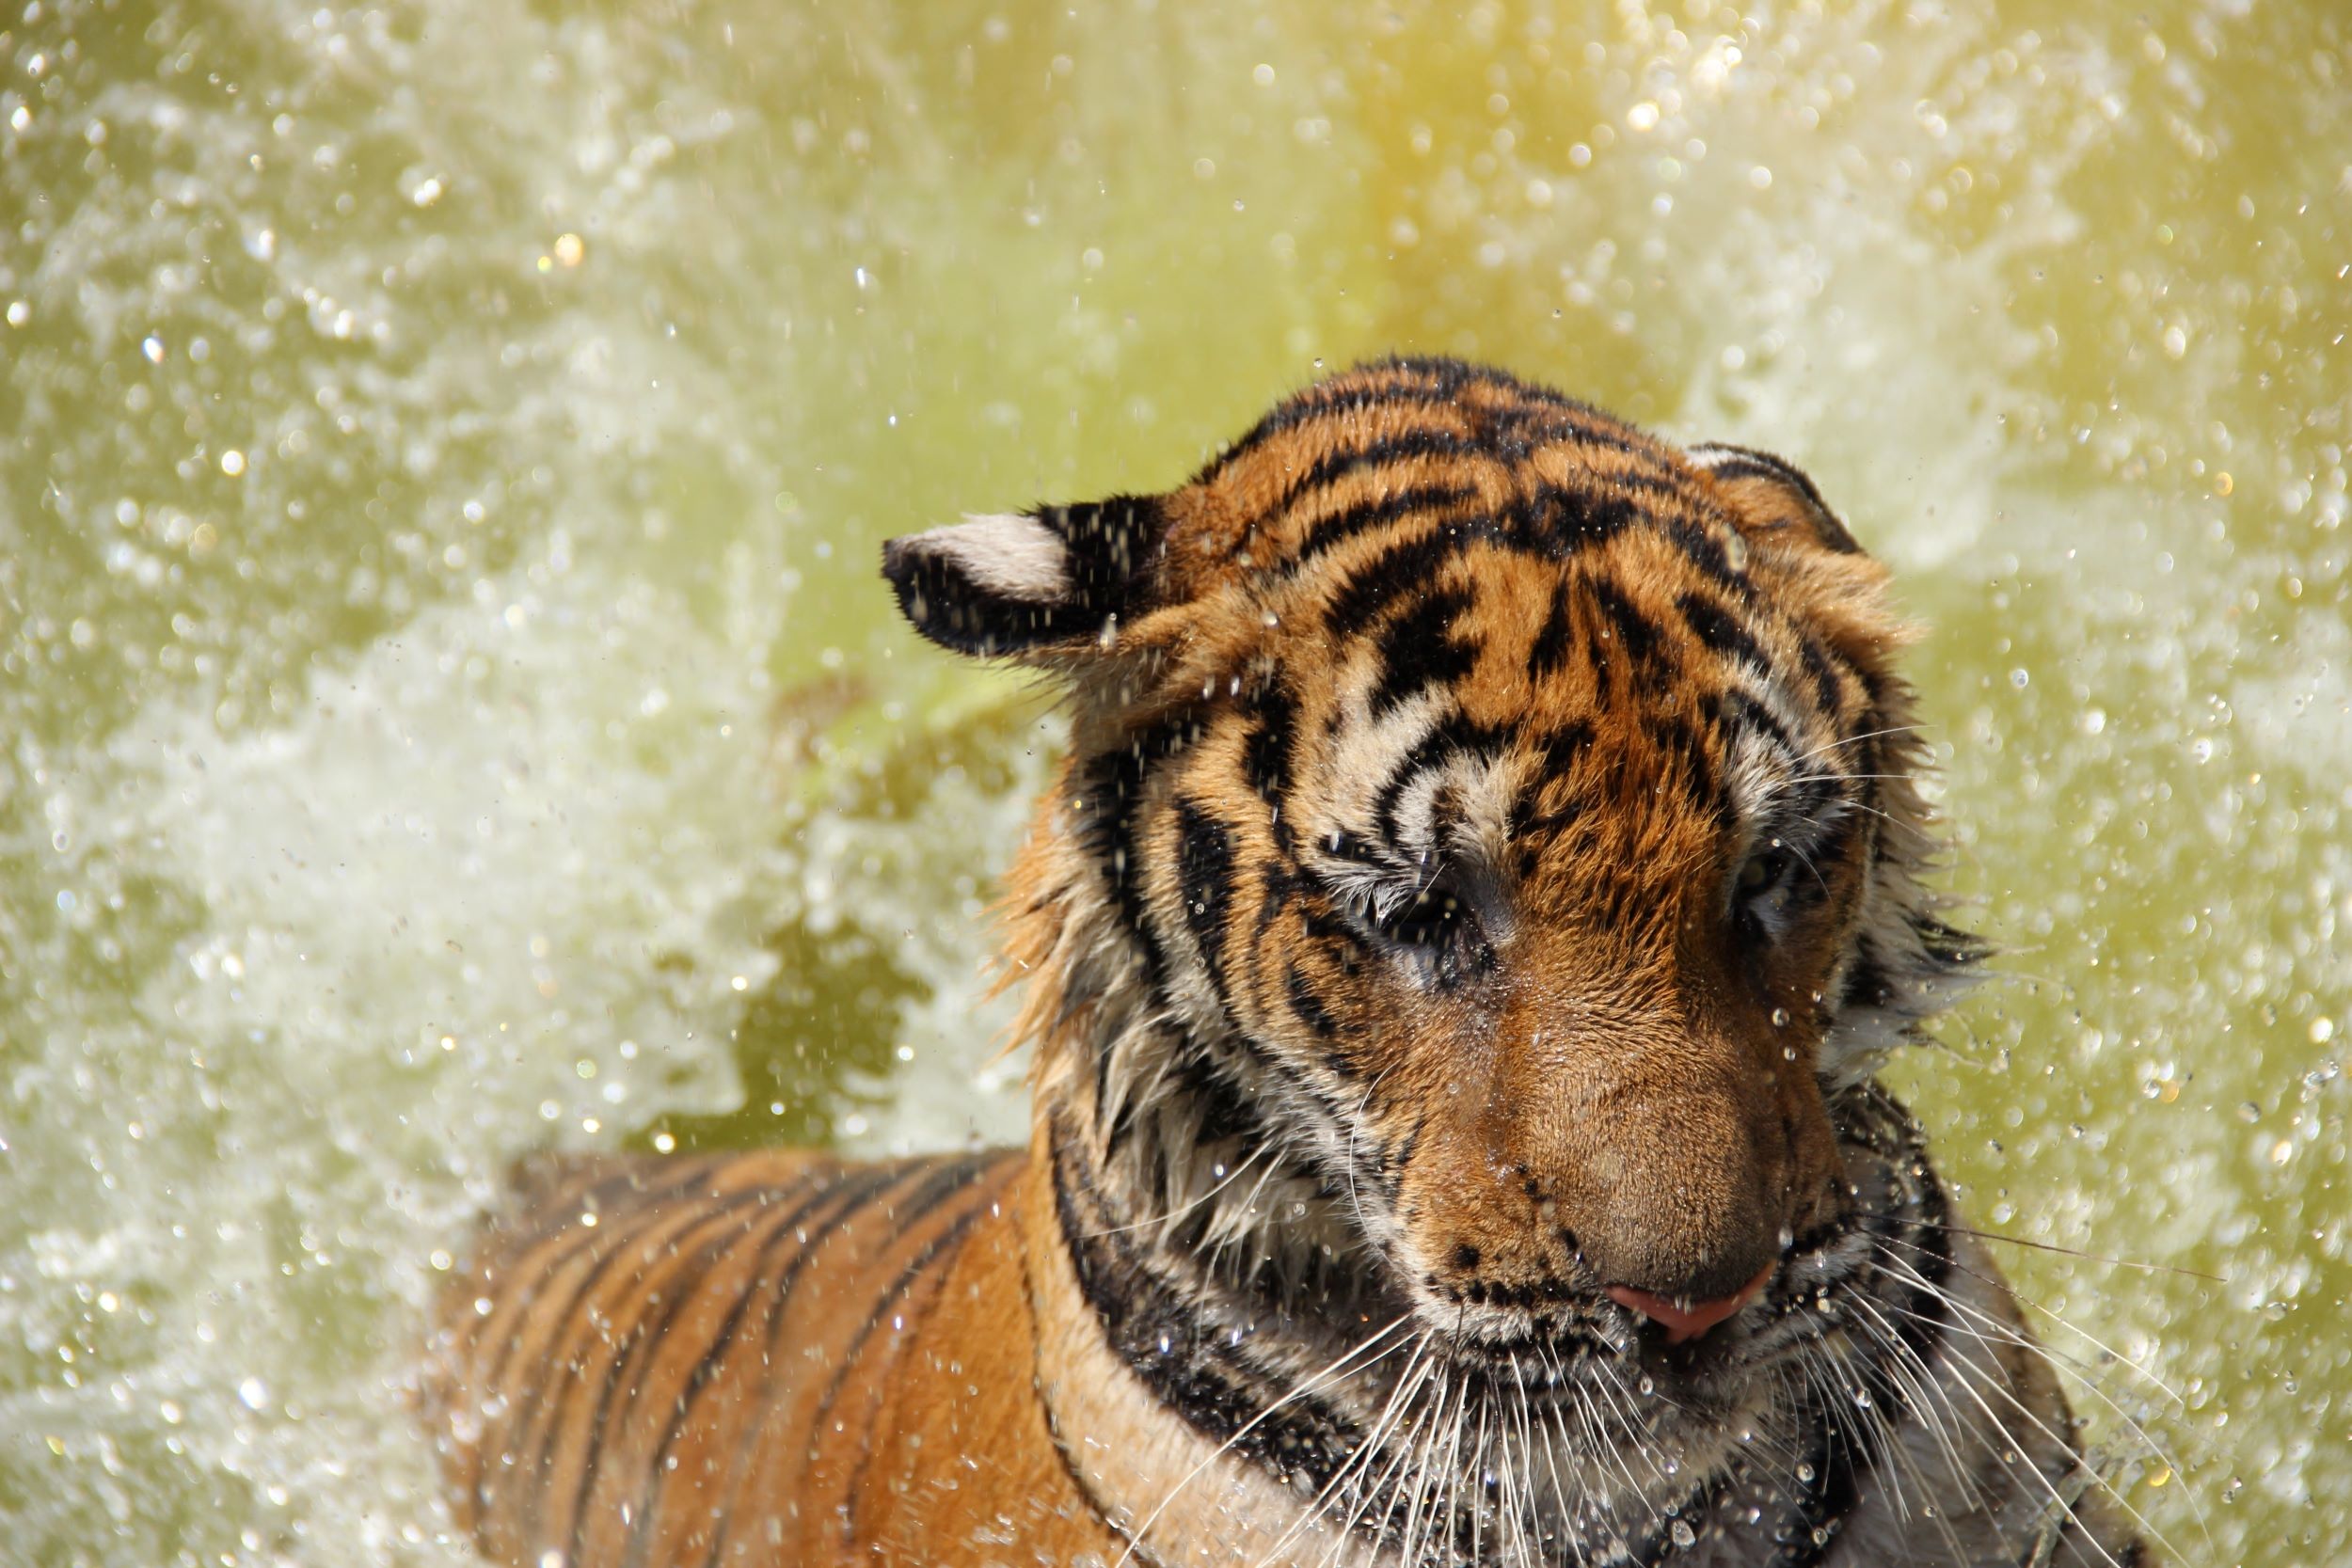 Tiger splashing in water